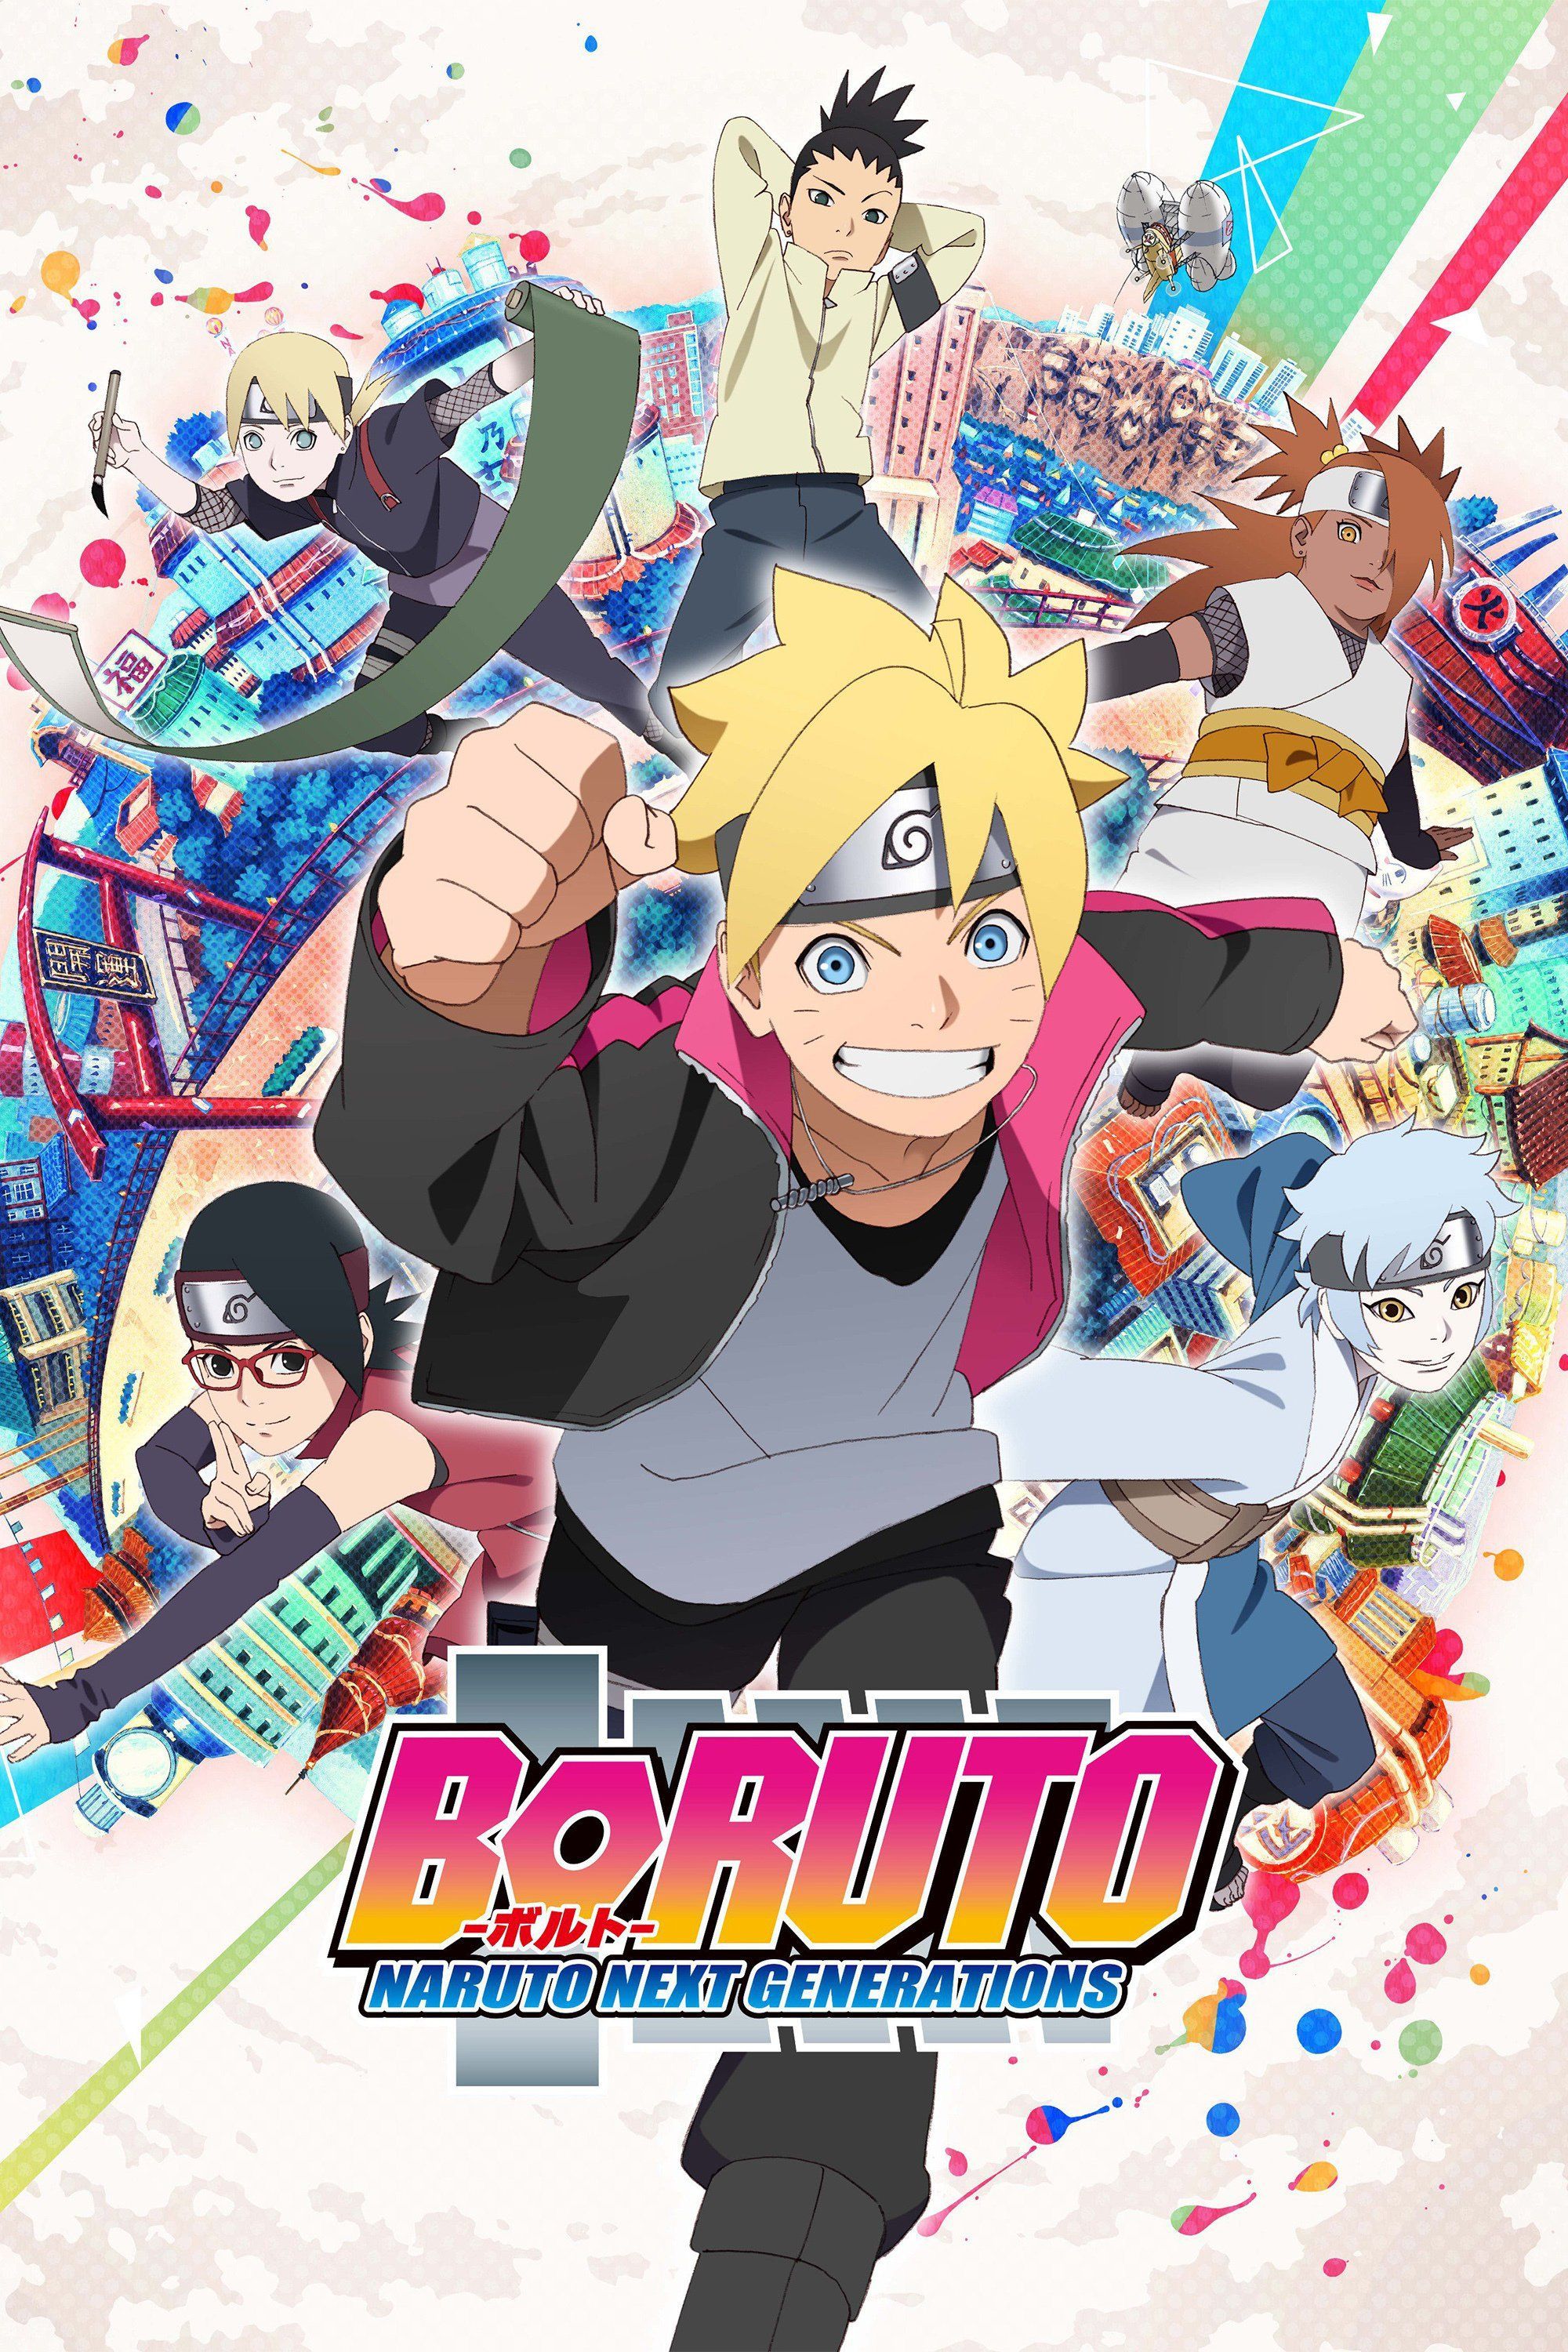 Boruto Naruto Next Generations Wallpaper Free Boruto Naruto